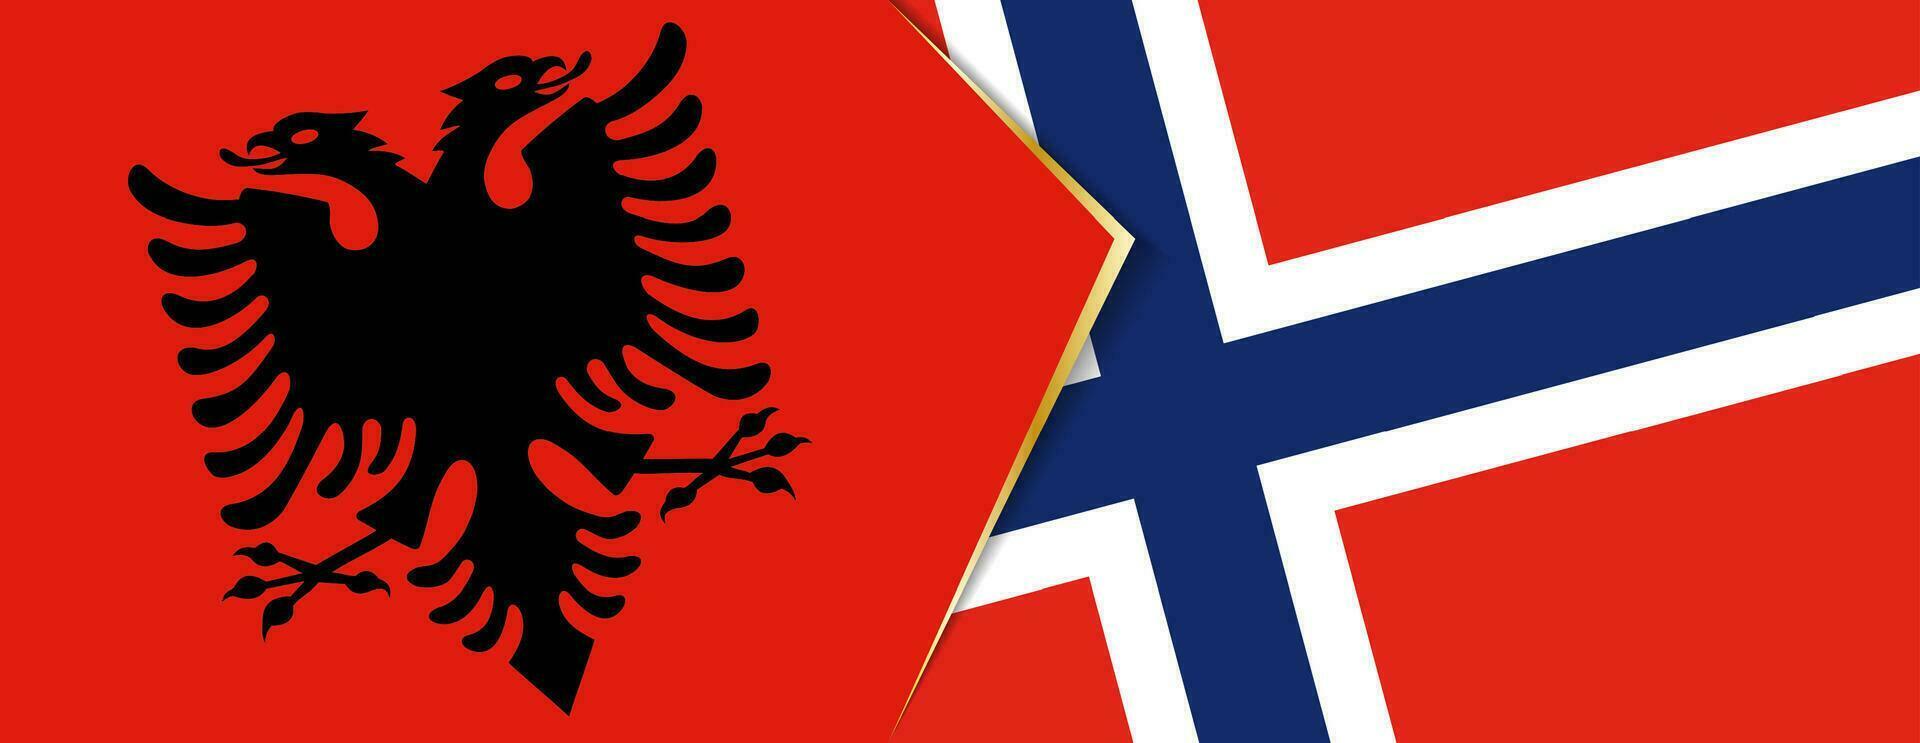 Albanien und Norwegen Flaggen, zwei Vektor Flaggen.